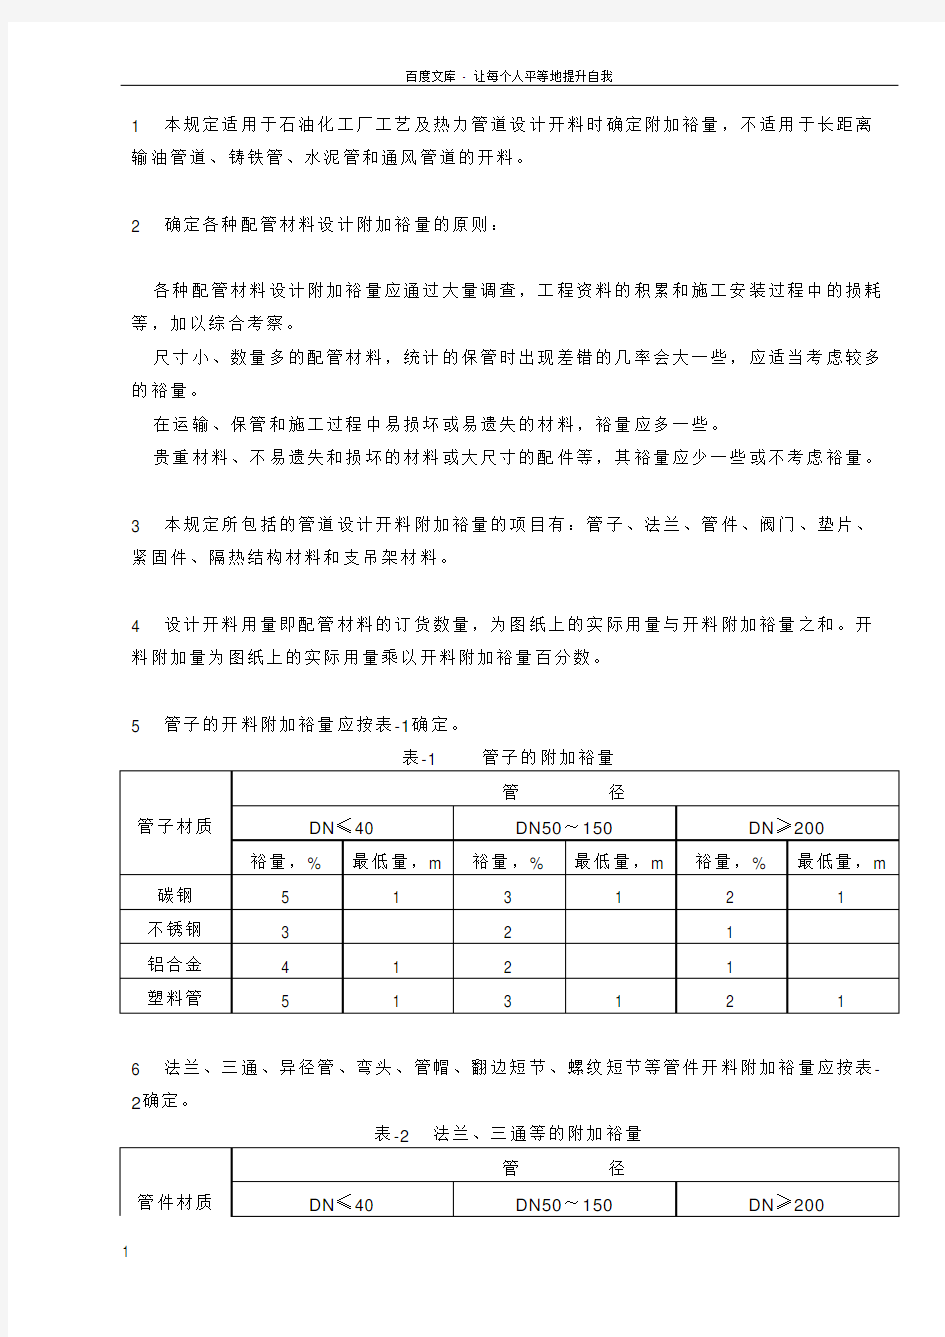 中国石化北京设计院标准管道开料附加裕量的规定